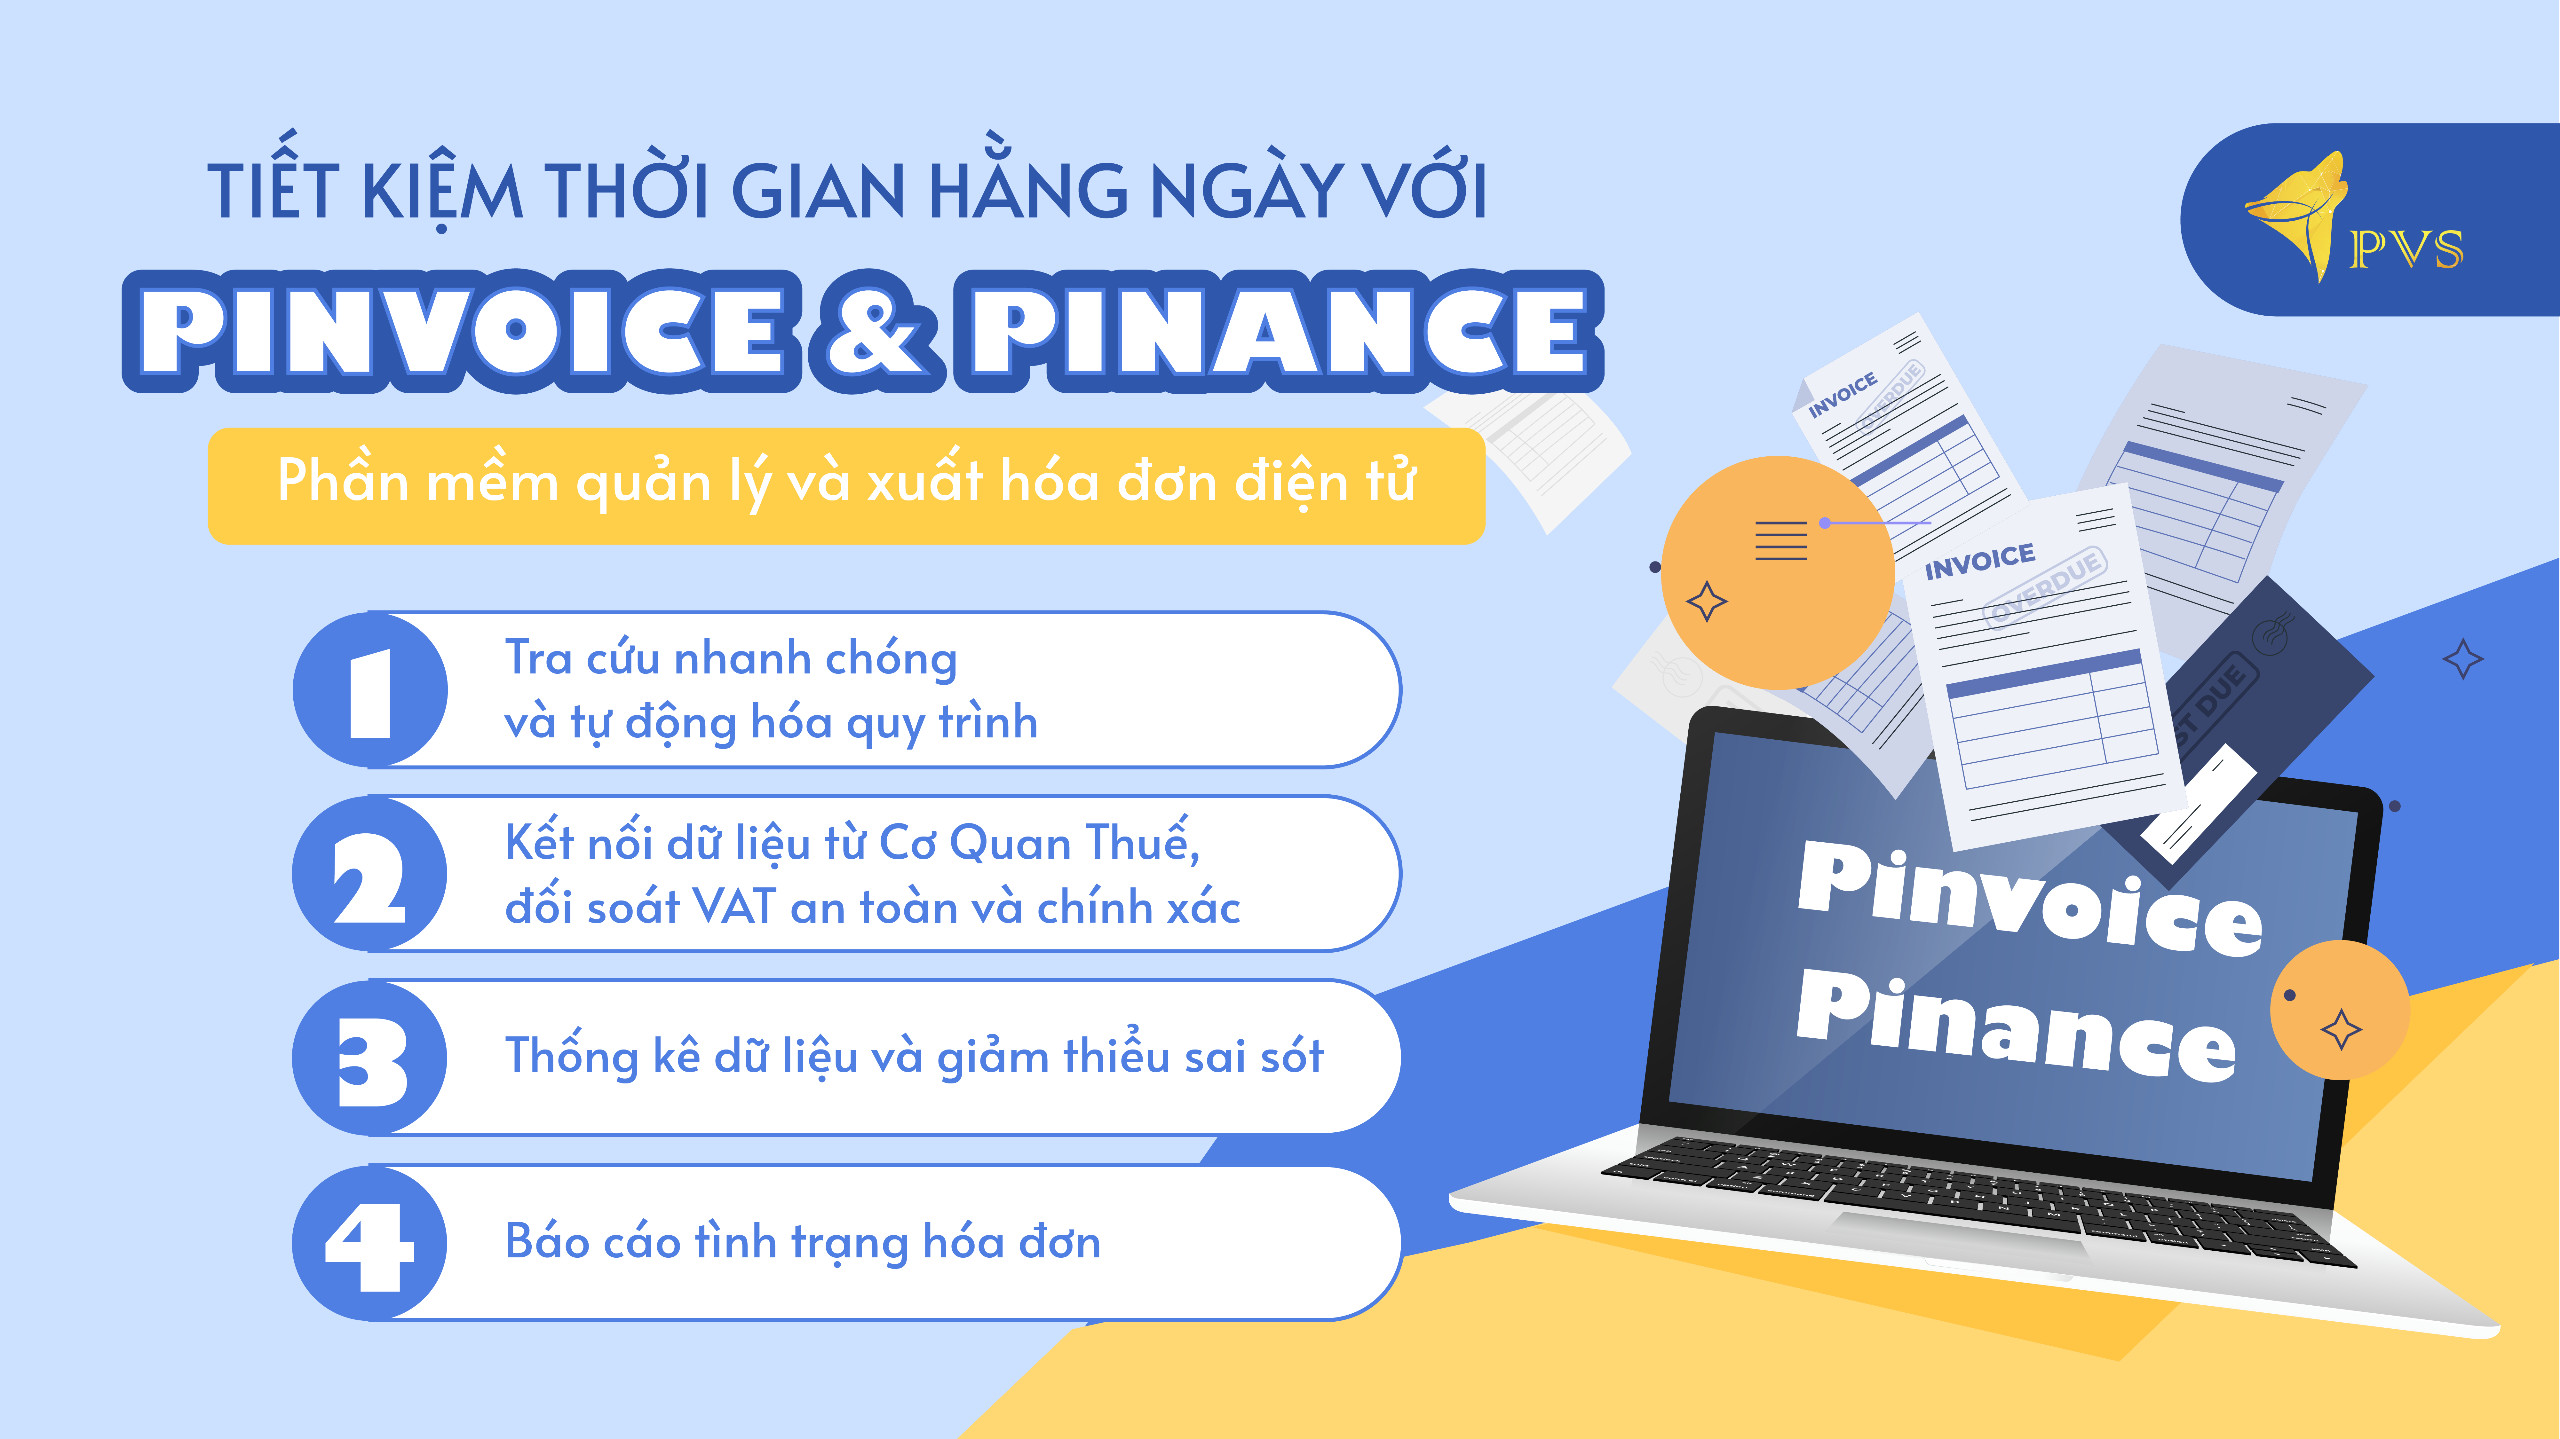 Tiết kiệm thời gian hàng ngày với Pinvoice và Pinance: Phần mềm quản lý và xuất hóa đơn điện tử